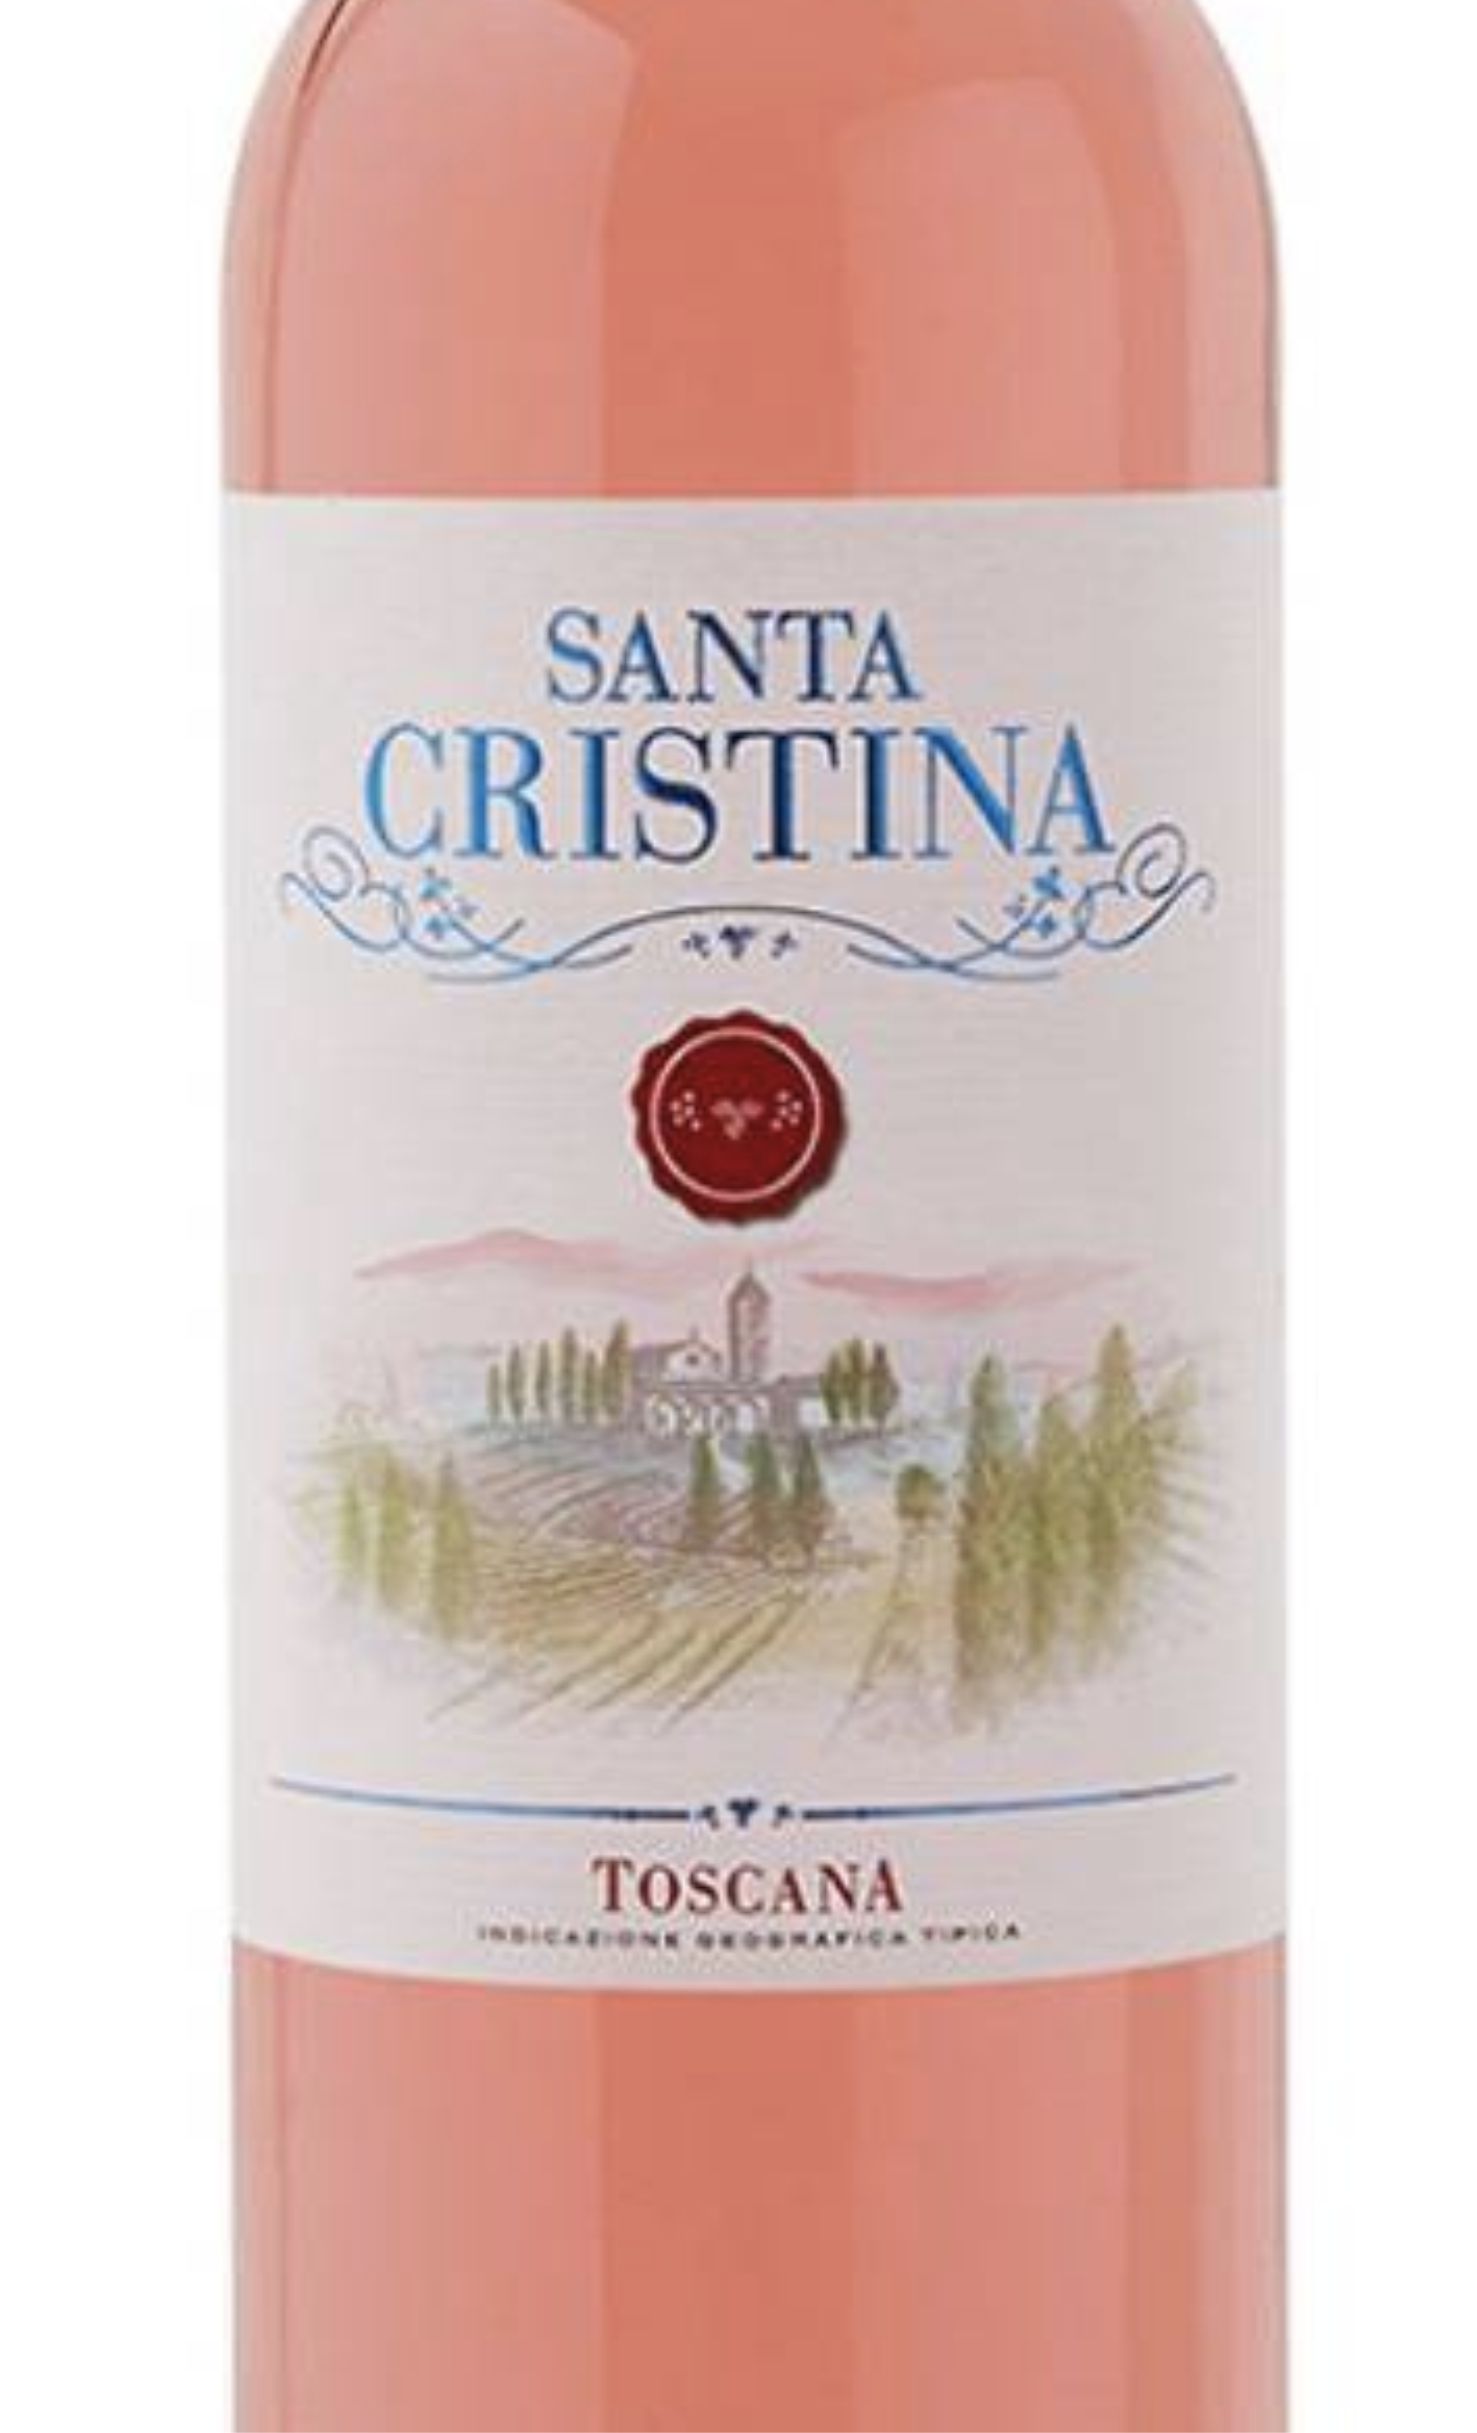 Этикетка Санта Кристина Розато Тоскана ИГТ 2018 0.75л. розовое 11.5% Полусухое